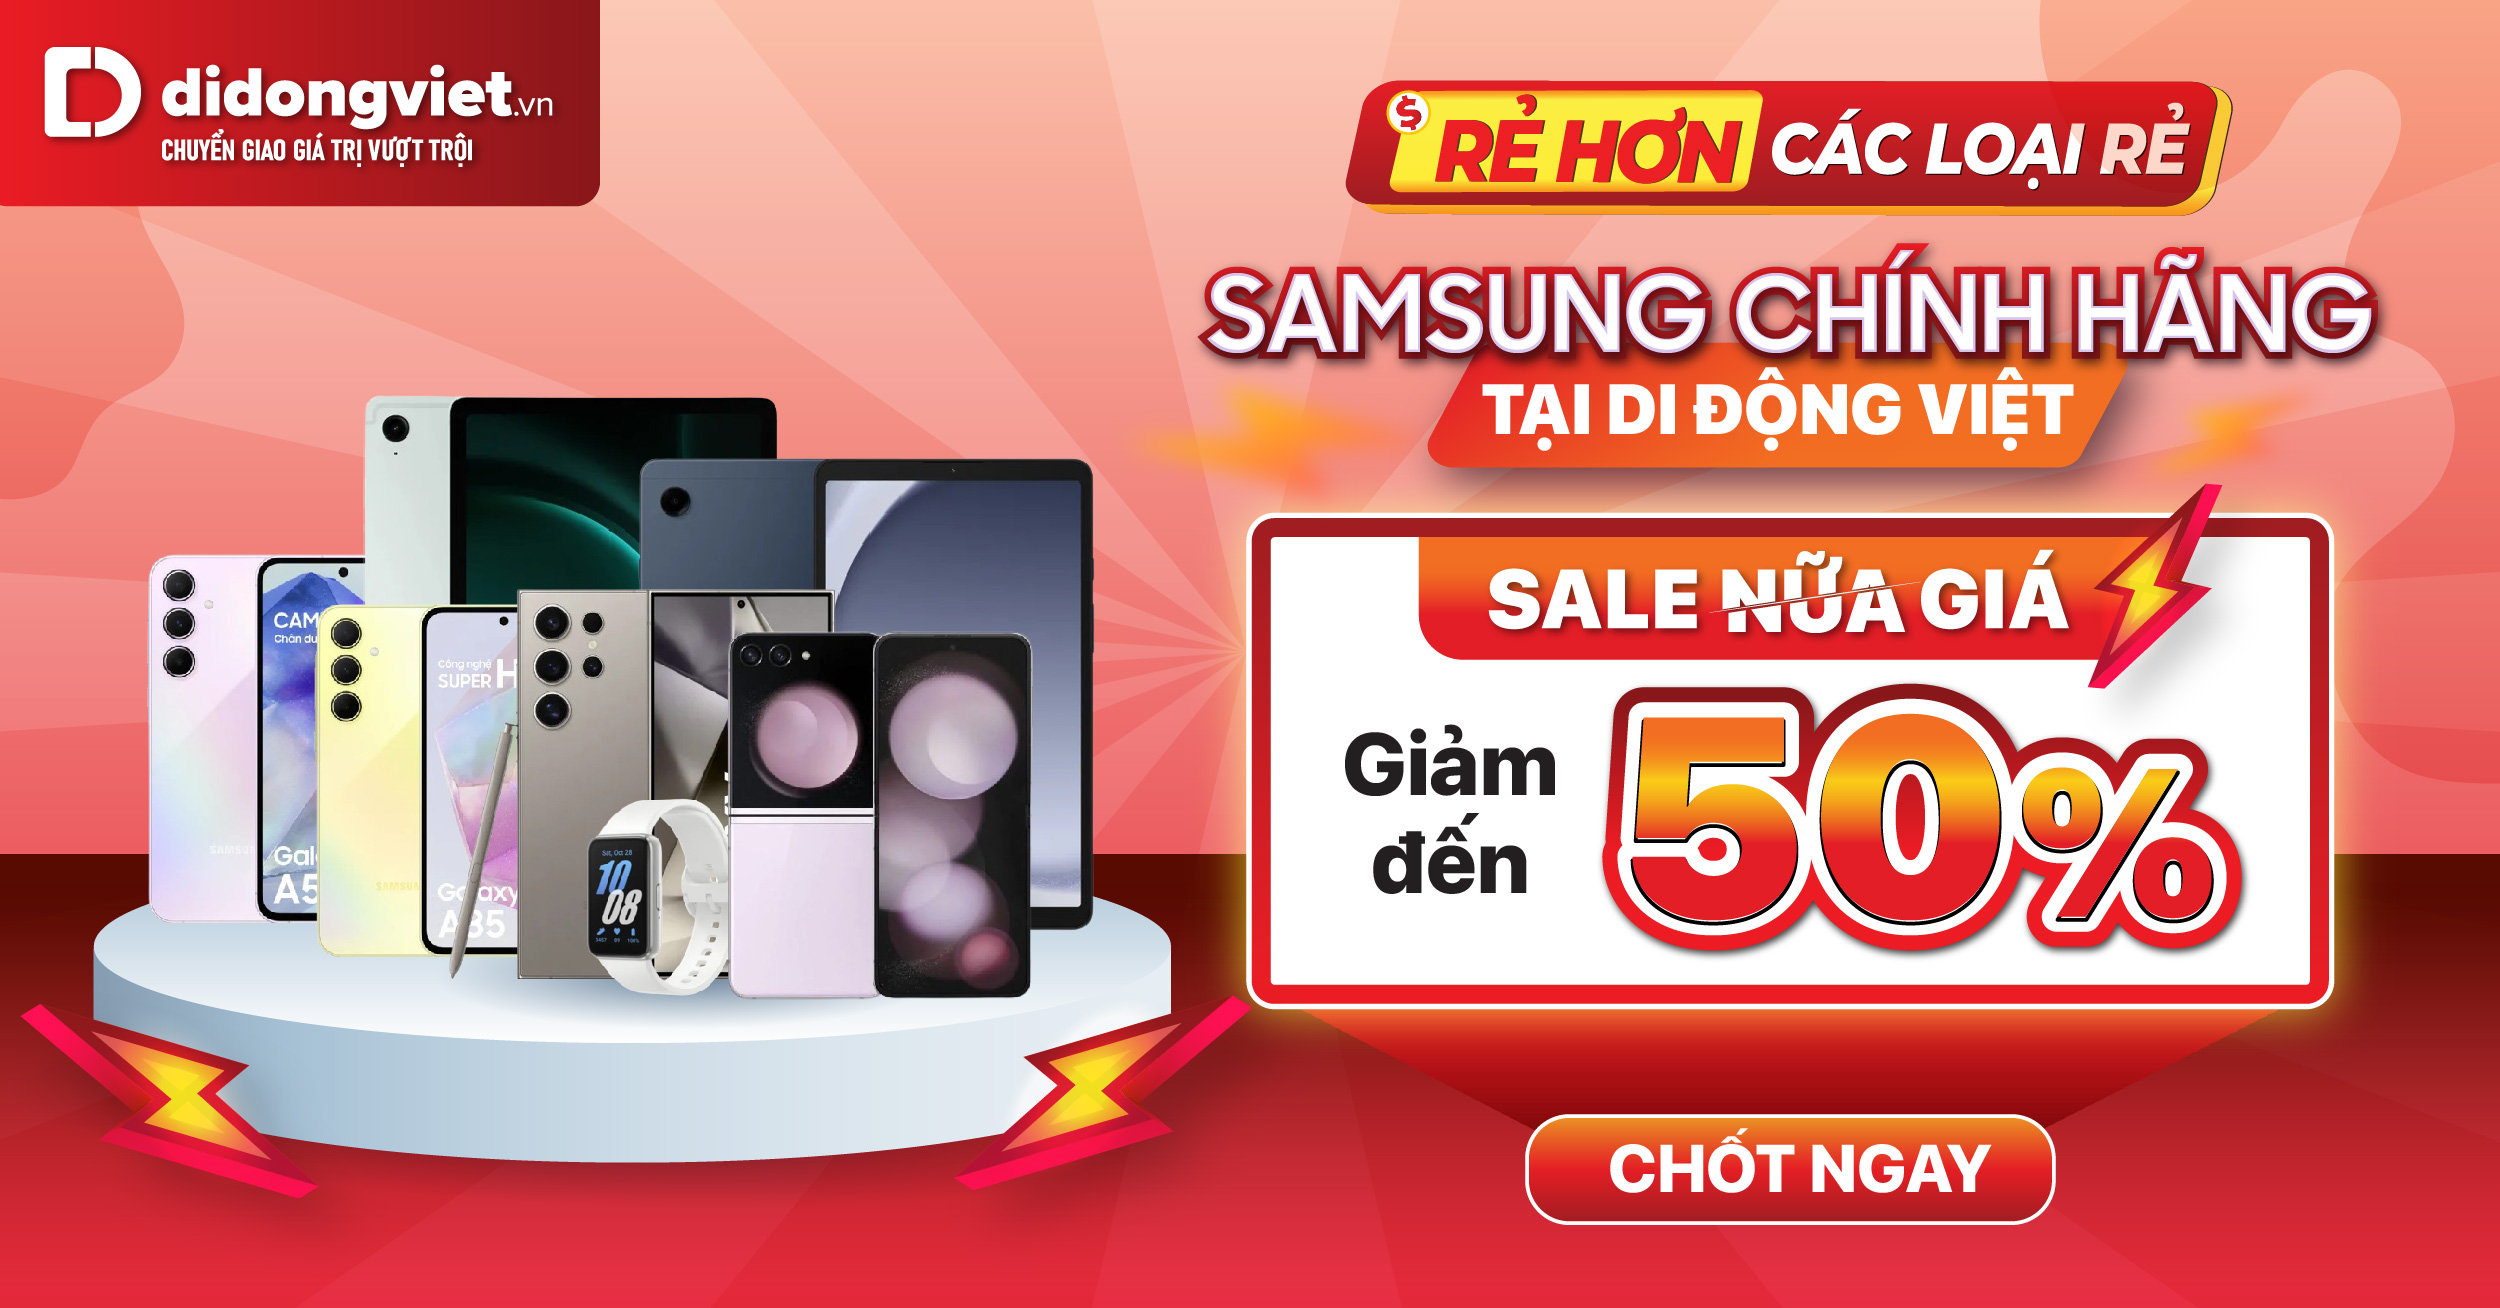 Samsung Chính Hãng tại Di Động Việt: Sale Nửa Giá Giảm Đến 50%